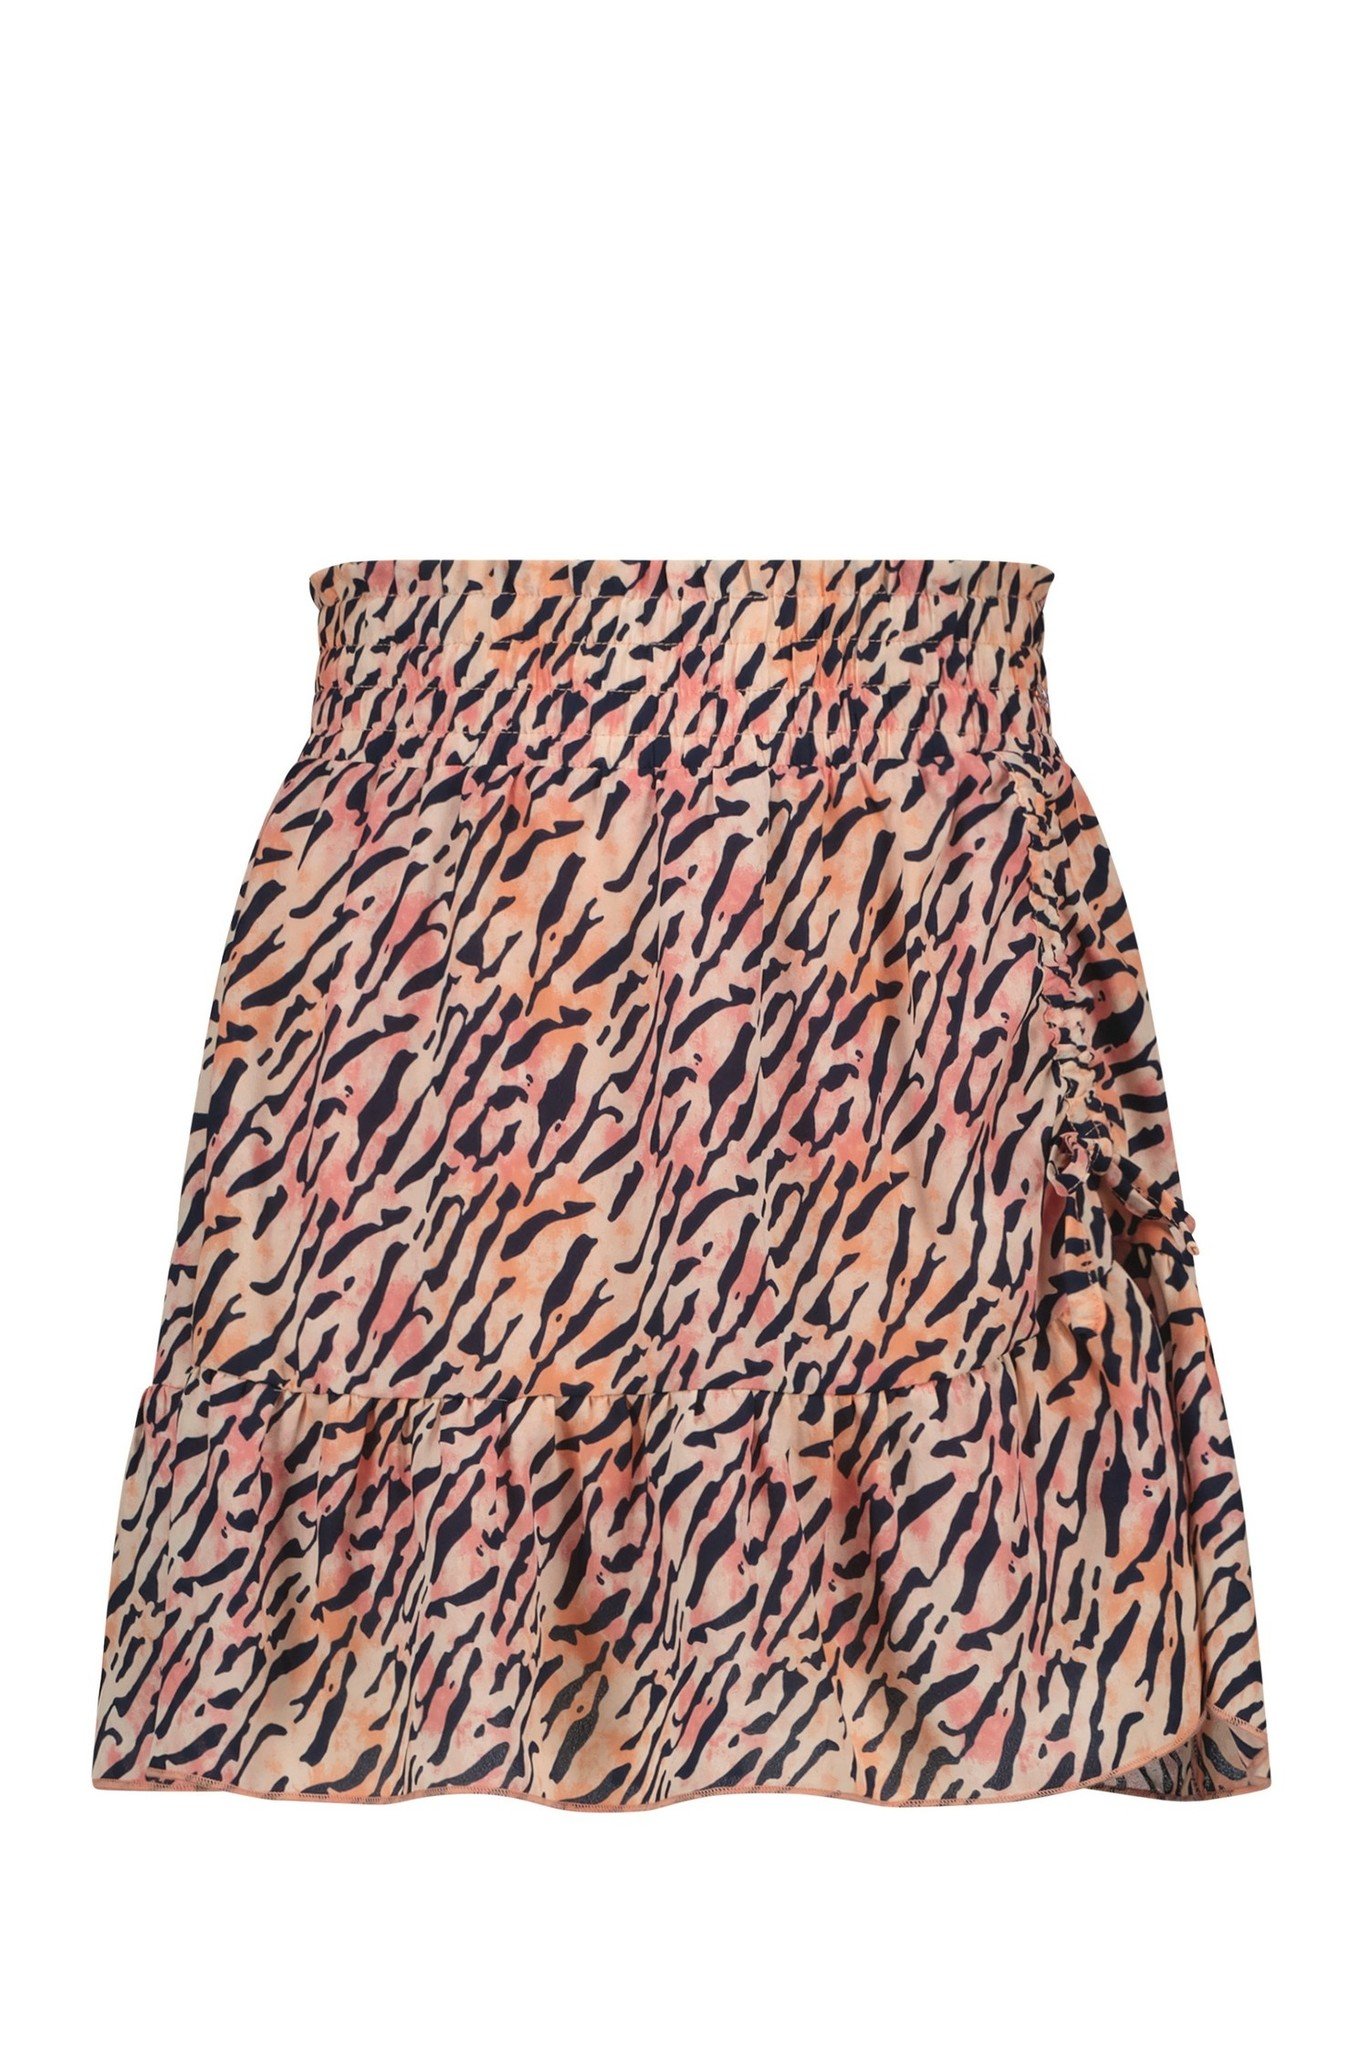 Nobell Nadia Short Skirt With Pull Up Detail Meisjes - Korte rok - Roze - Maat 134/140